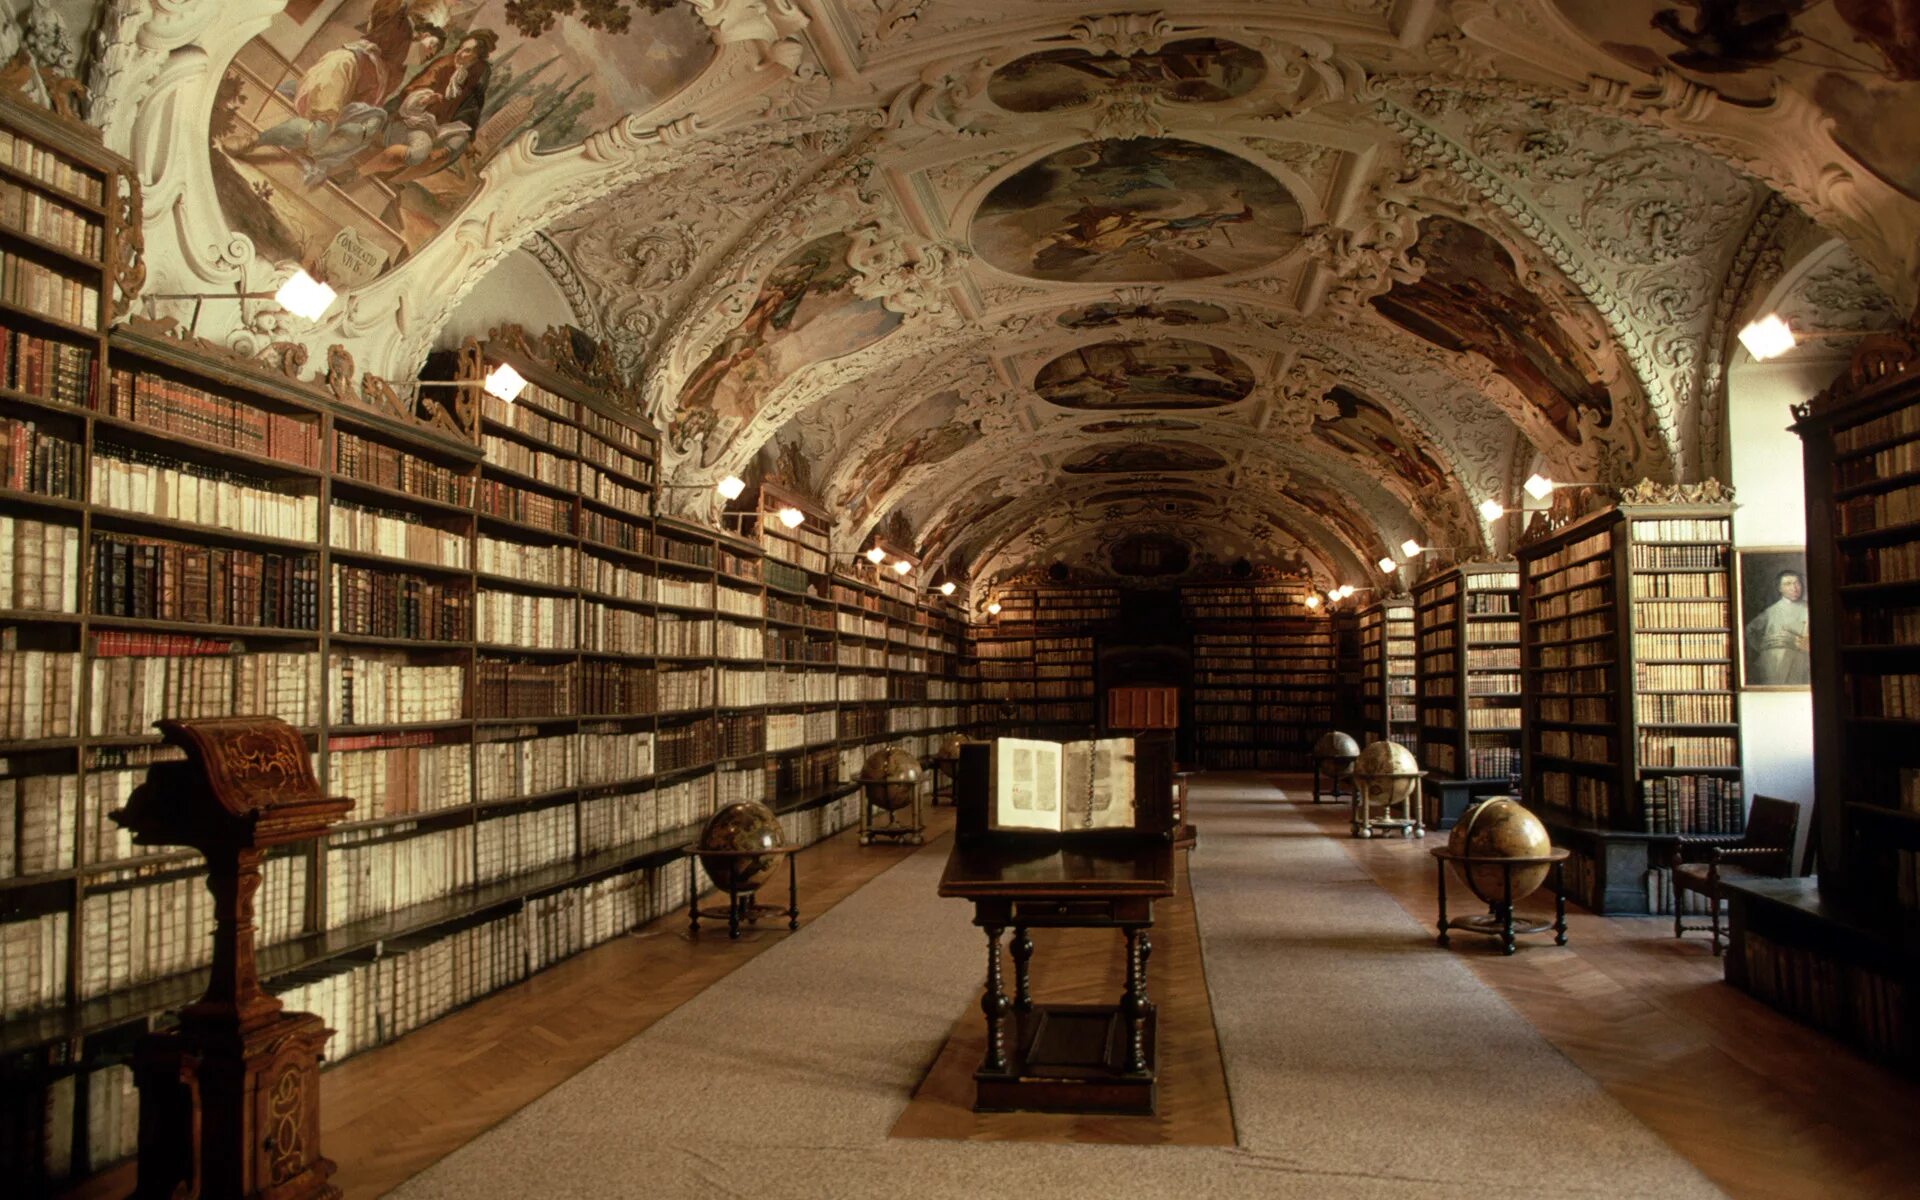 Библиотека без людей. Библиотека в Праге Клементинум. Национальная библиотека Прага Клементинум.